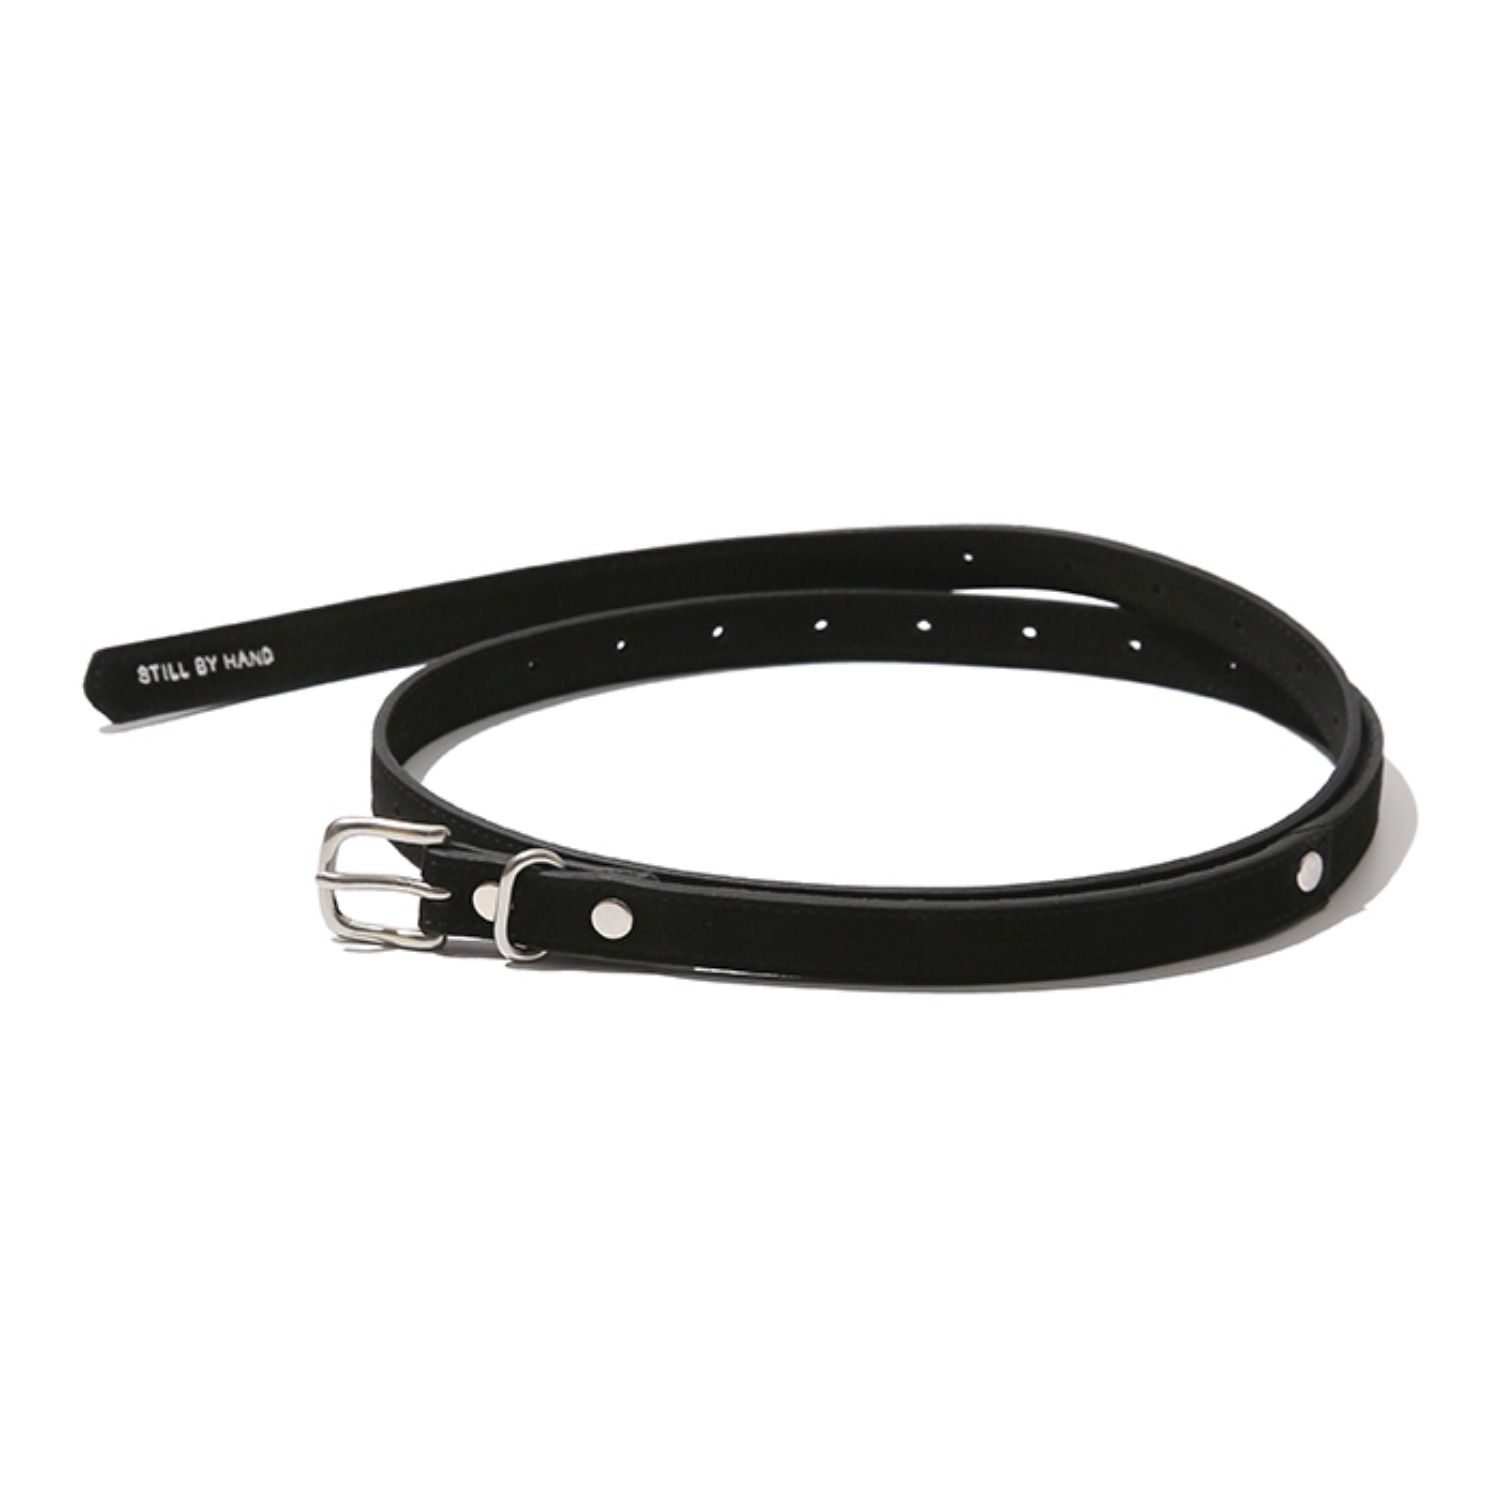 18mm leather belt black